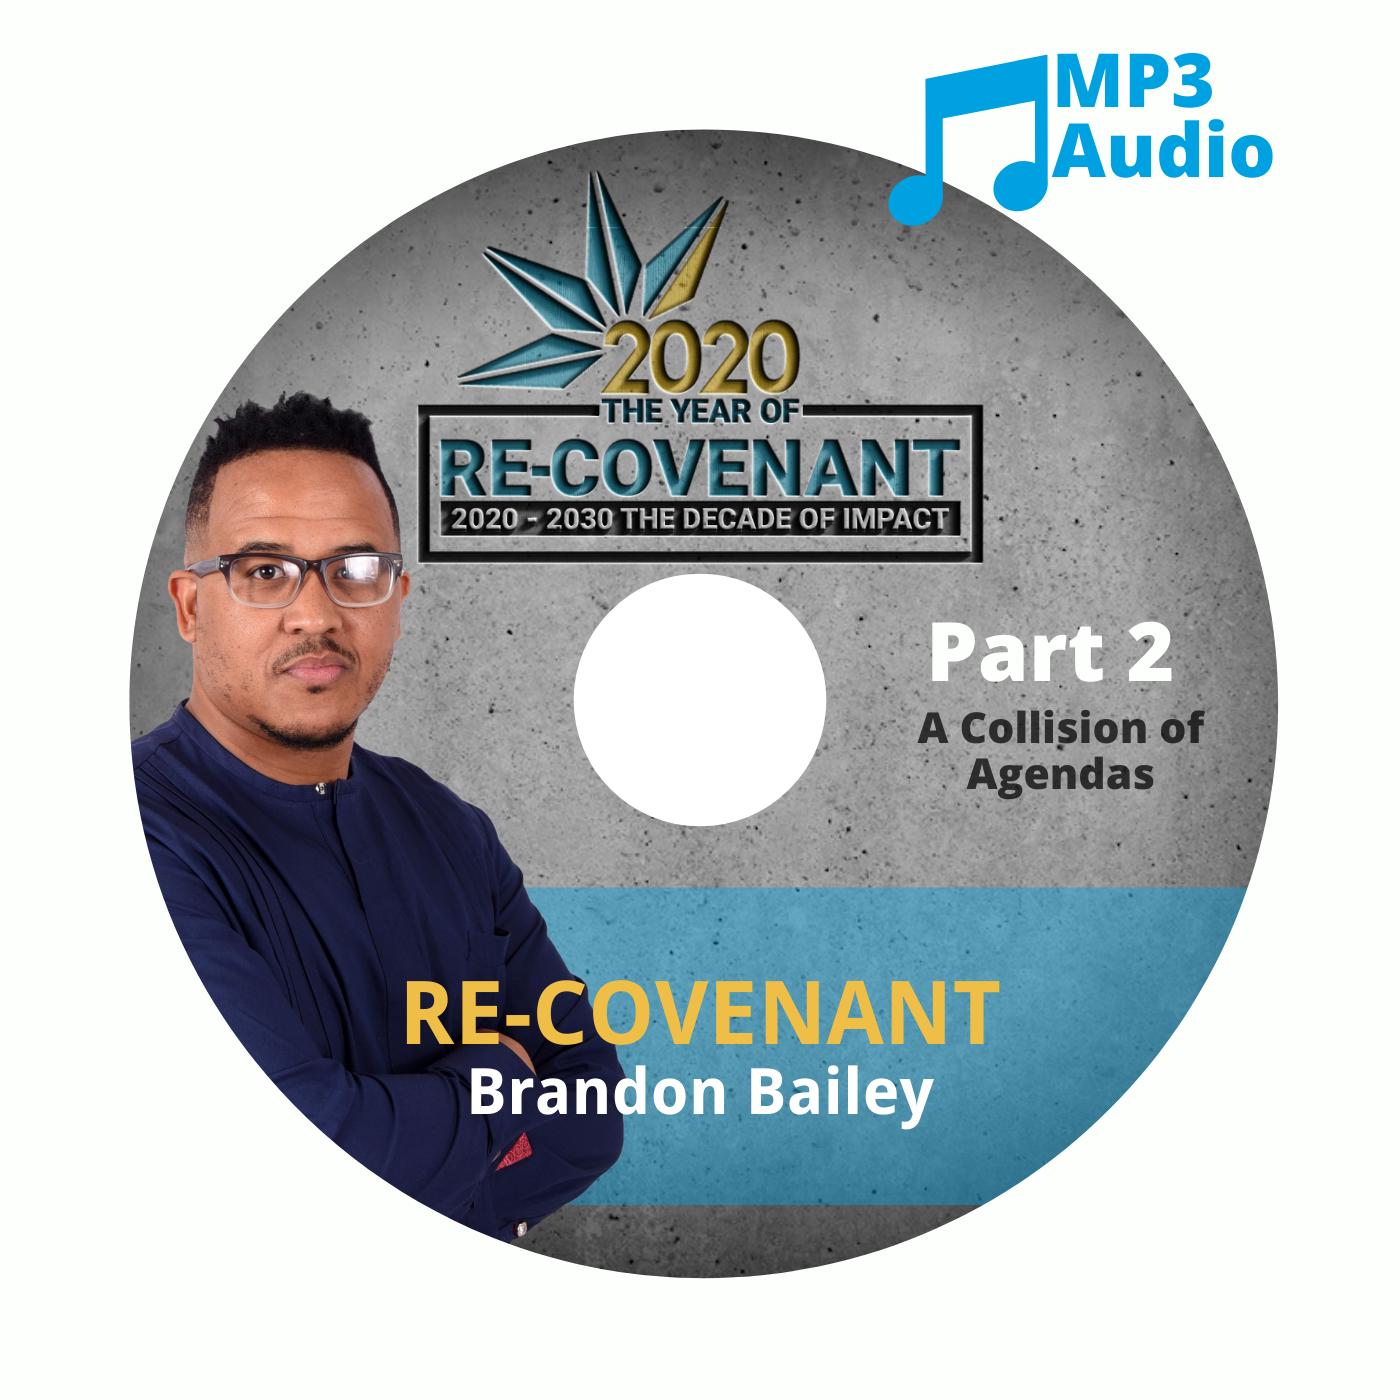 Re-Covenant Part 2: A Collision of Agendas